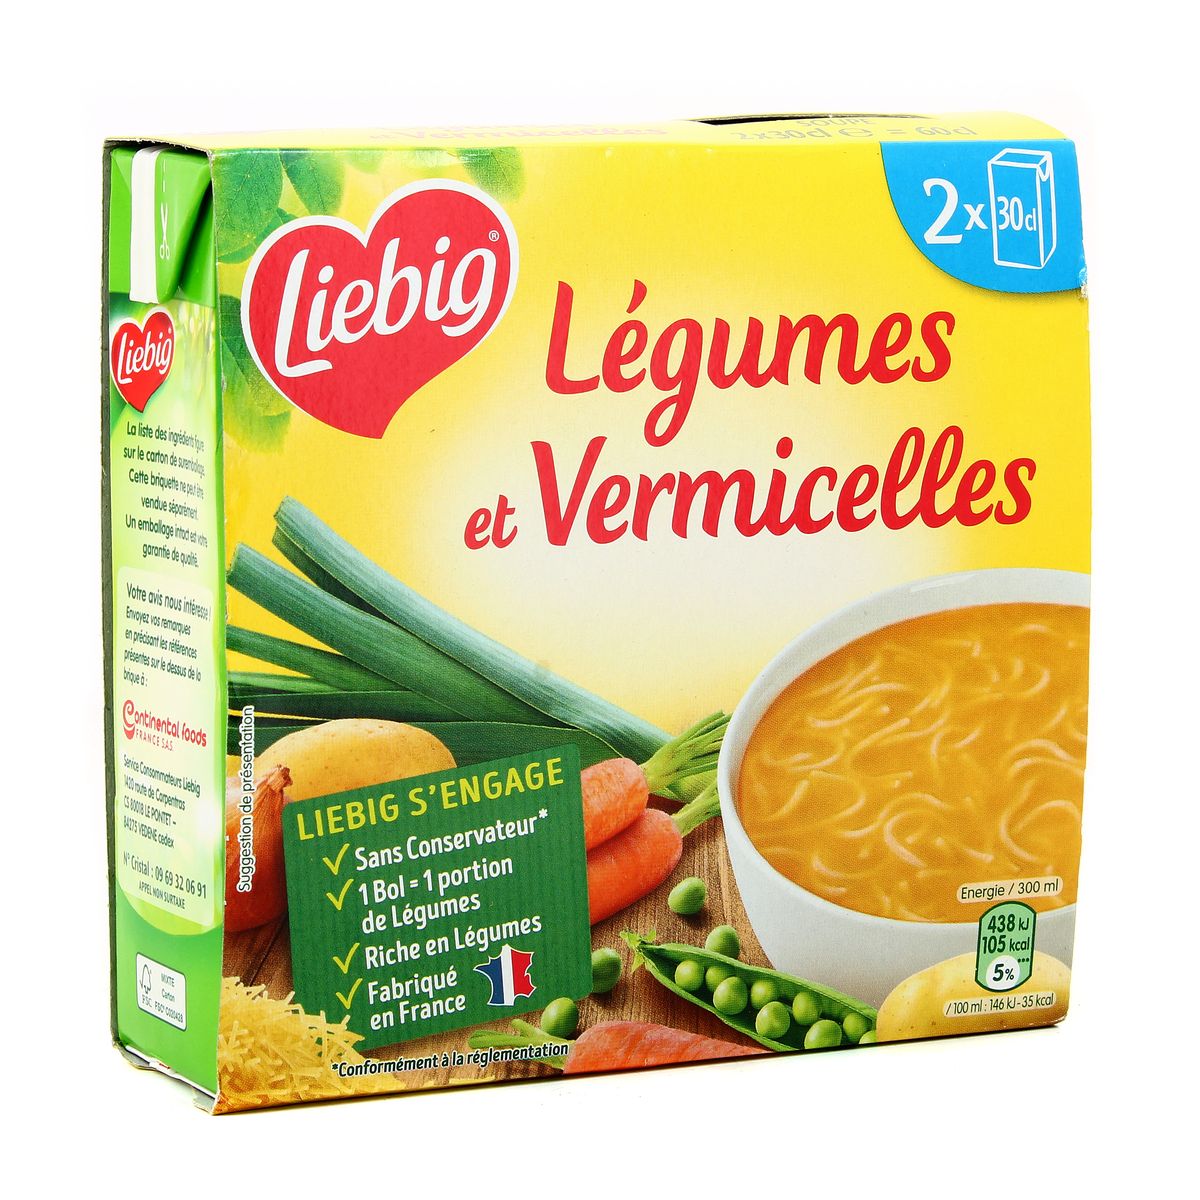 EURO MARKET  liebig soupe legumes pates vermicelles 60 cl – Euro-Market